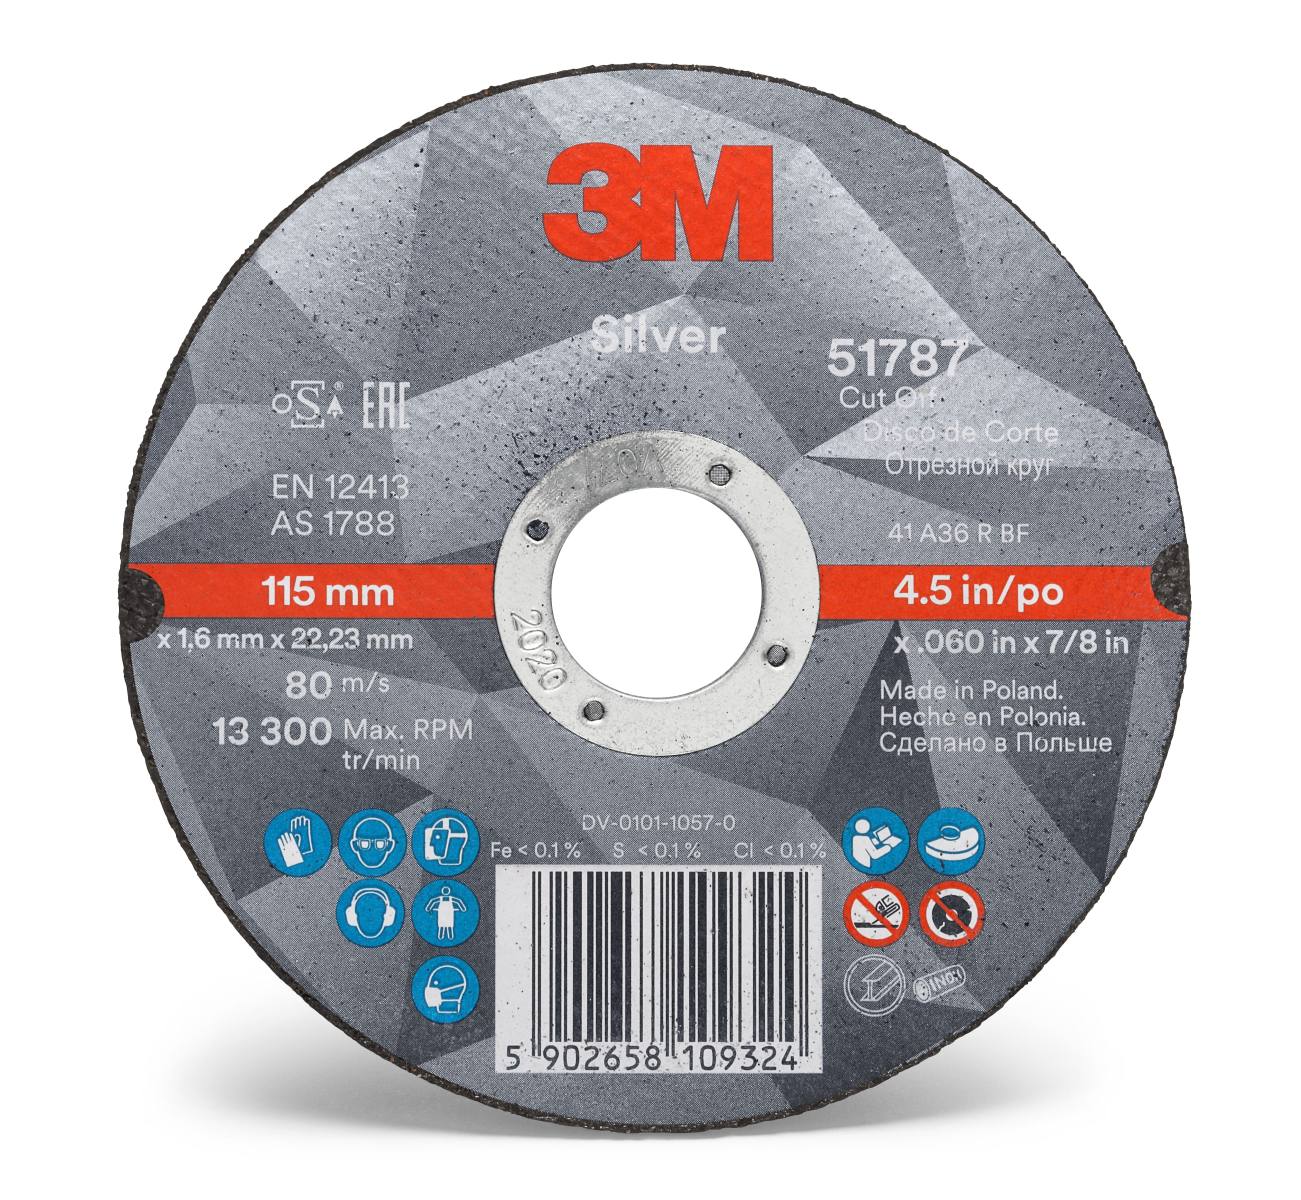 3M Silver Cut-Off Wheel Disque à tronçonner, 100 mm, 1,0 mm, 6 mm, T41, 51771